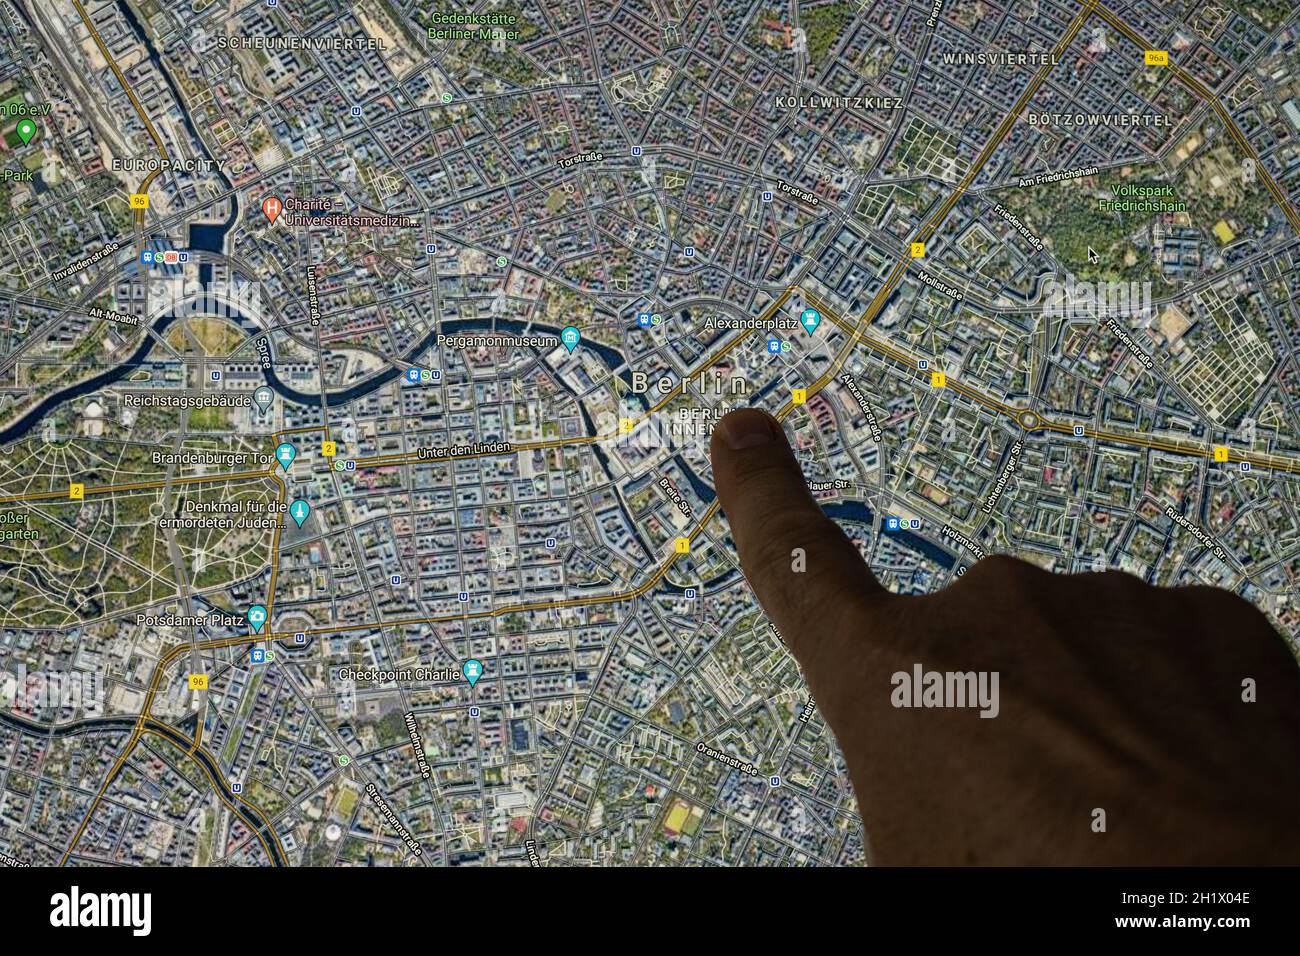 Udine, Italien. 21. August 2021. Die Google Maps-Satellitenansicht von Berlin, der Hauptstadt Deutschlands, wird mit einem Finger angezeigt Stockfoto